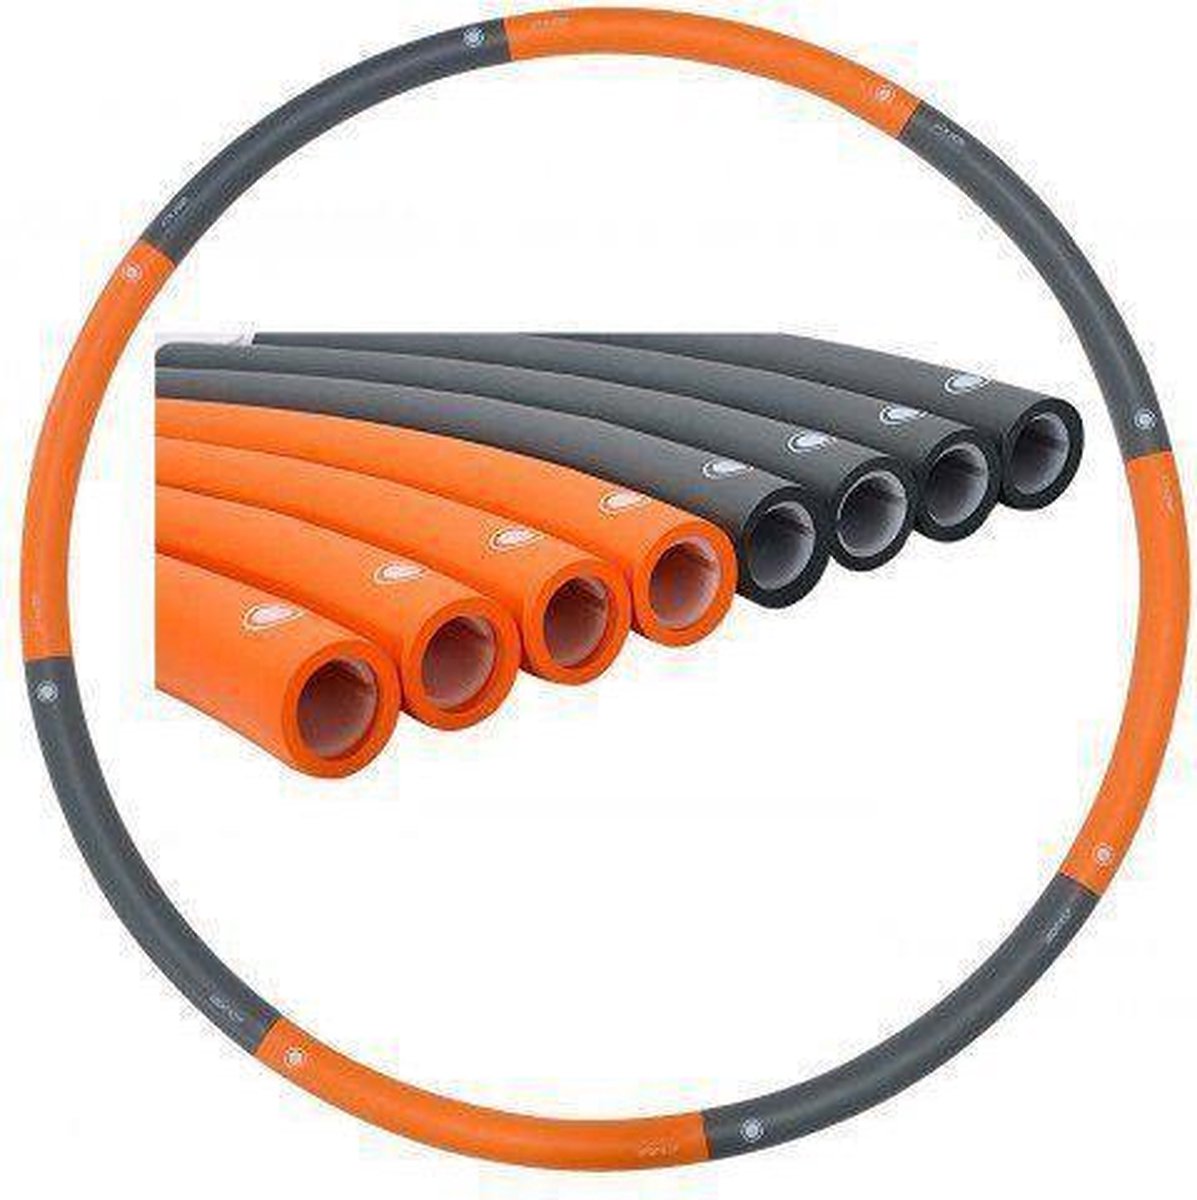 Weight hoop New Generation - Fitness Hoelahoep - 1.8 kg - Ø 100 cm - Oranje/Grijs - Weight hoop